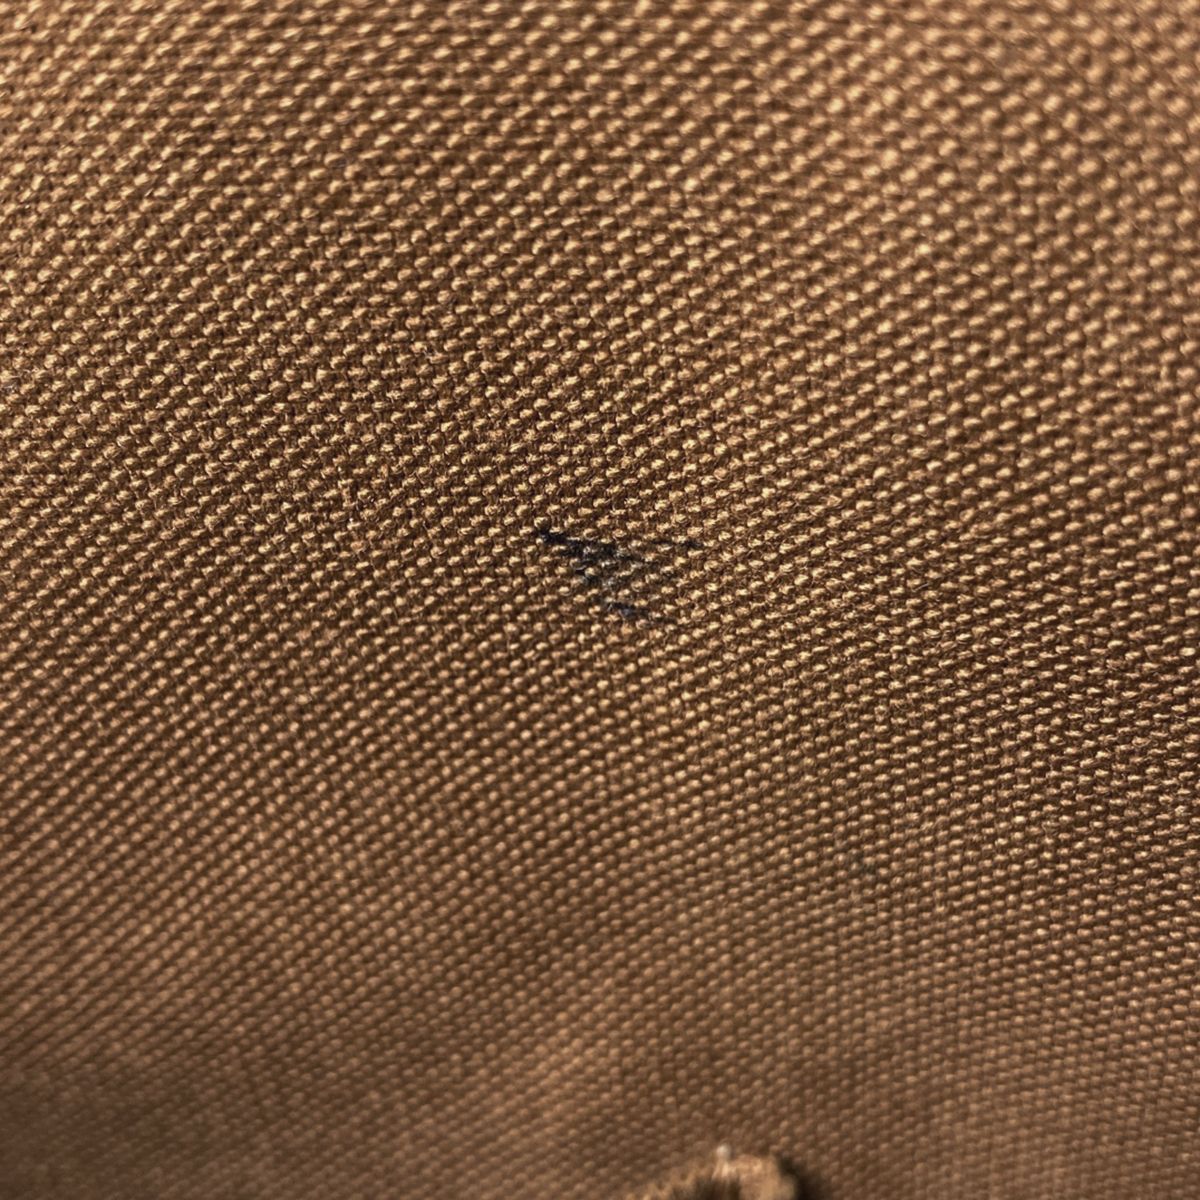 ルイ・ヴィトン Louis Vuitton カバ ボブール ショルダーバッグ 肩掛け トートバッグ モノグラム ブラウン M53013 メンズ 【中古】